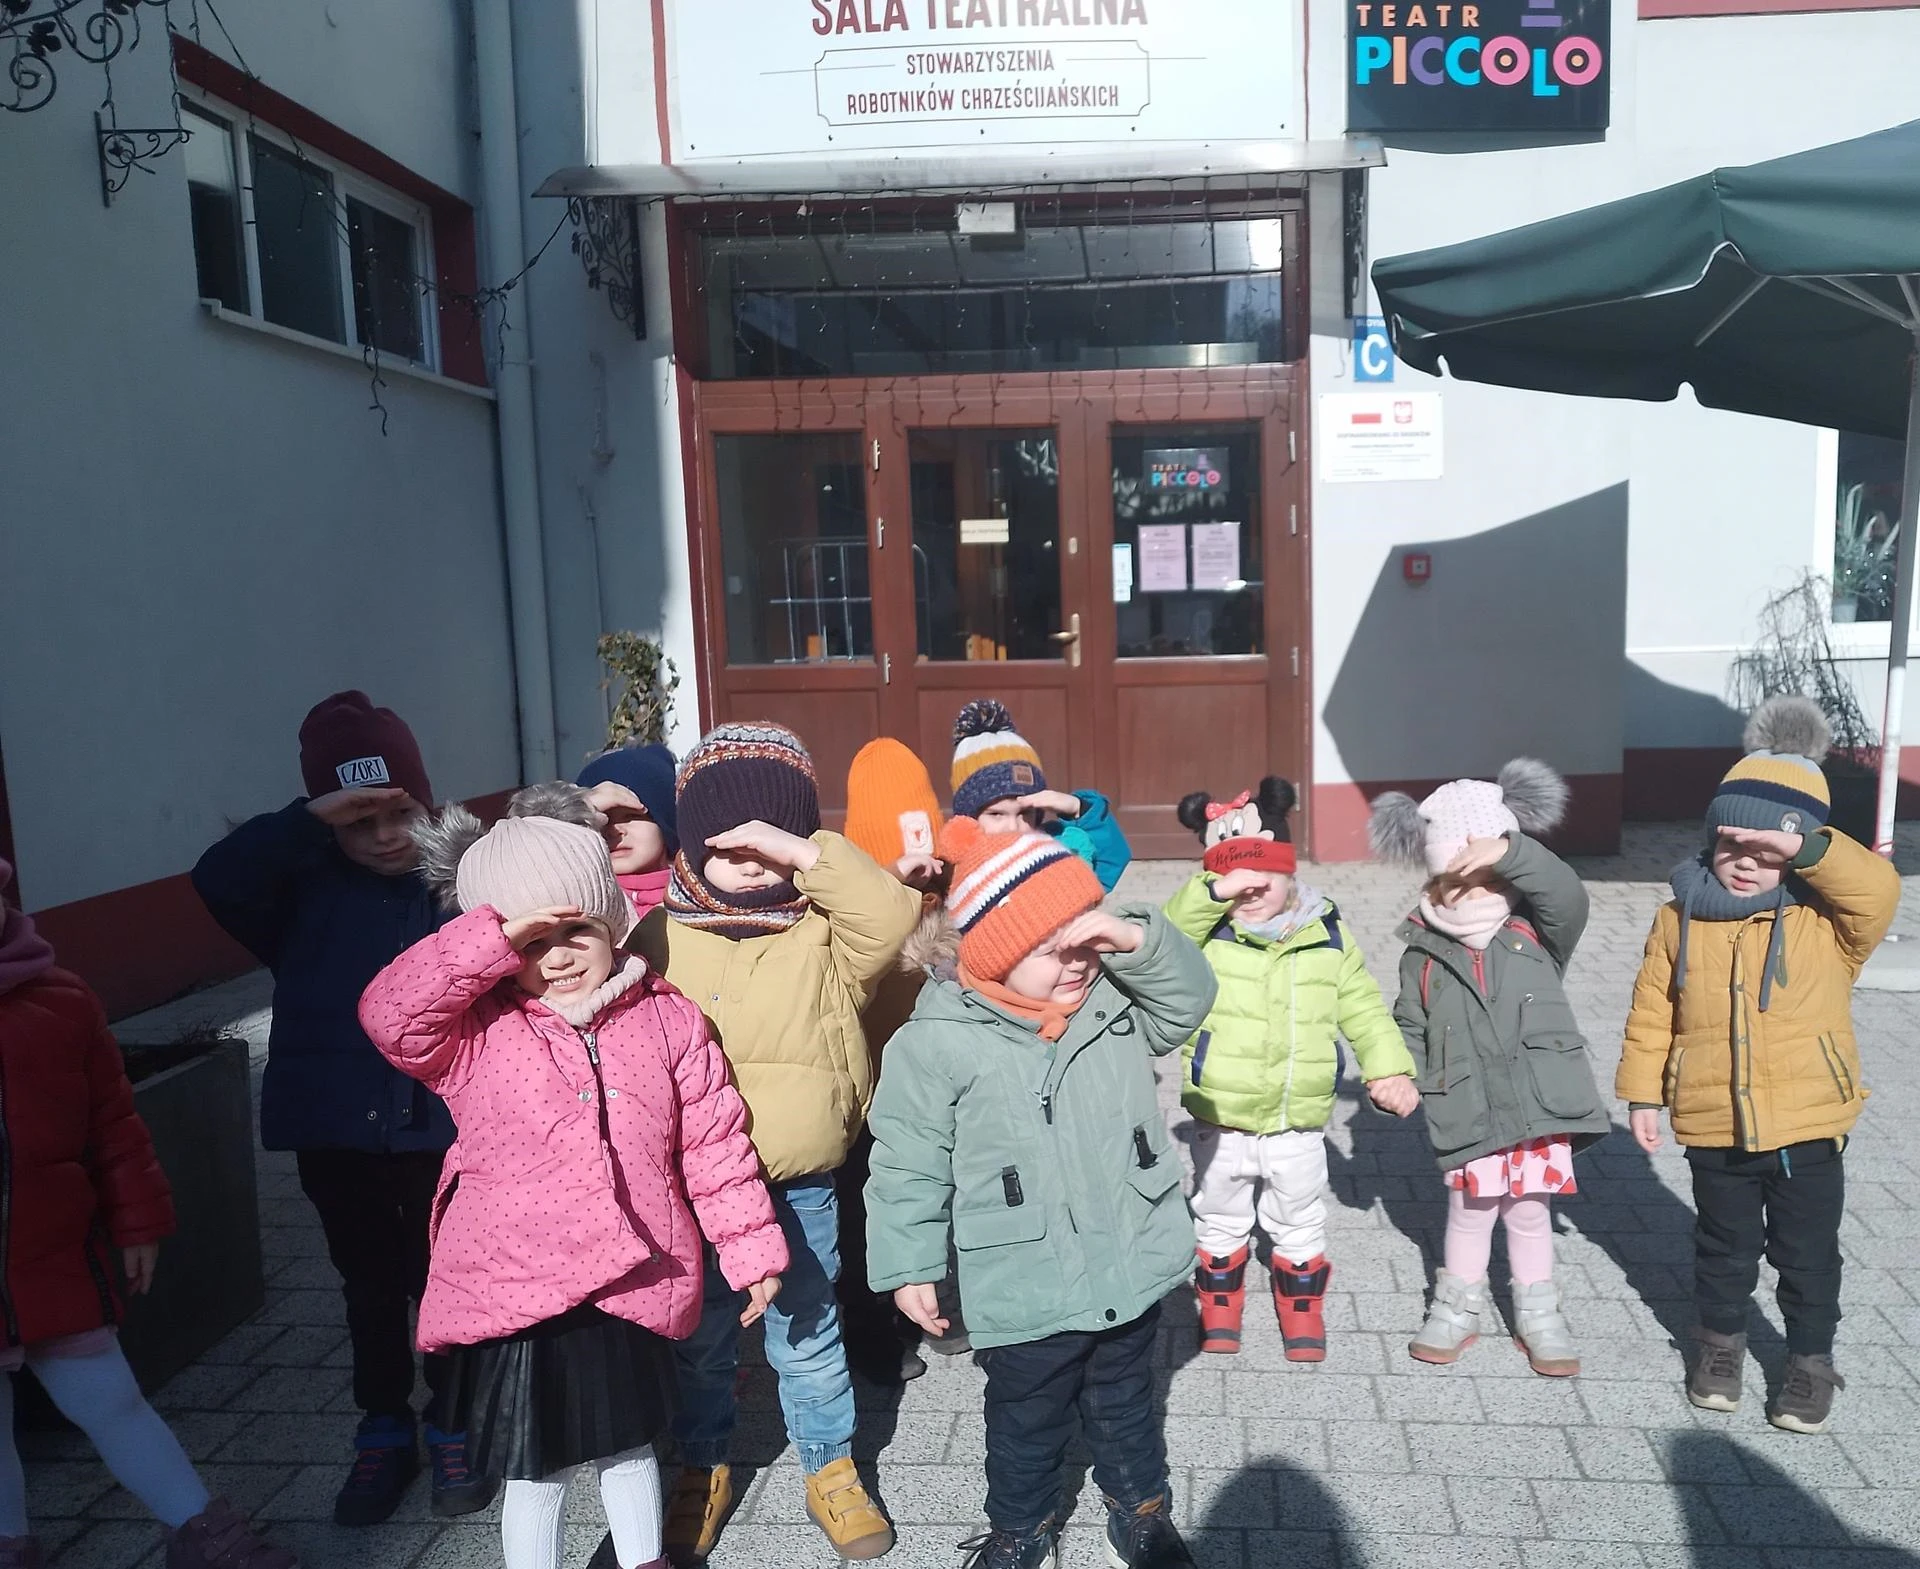 teatr piccolo przedszkole prywatne rzgów